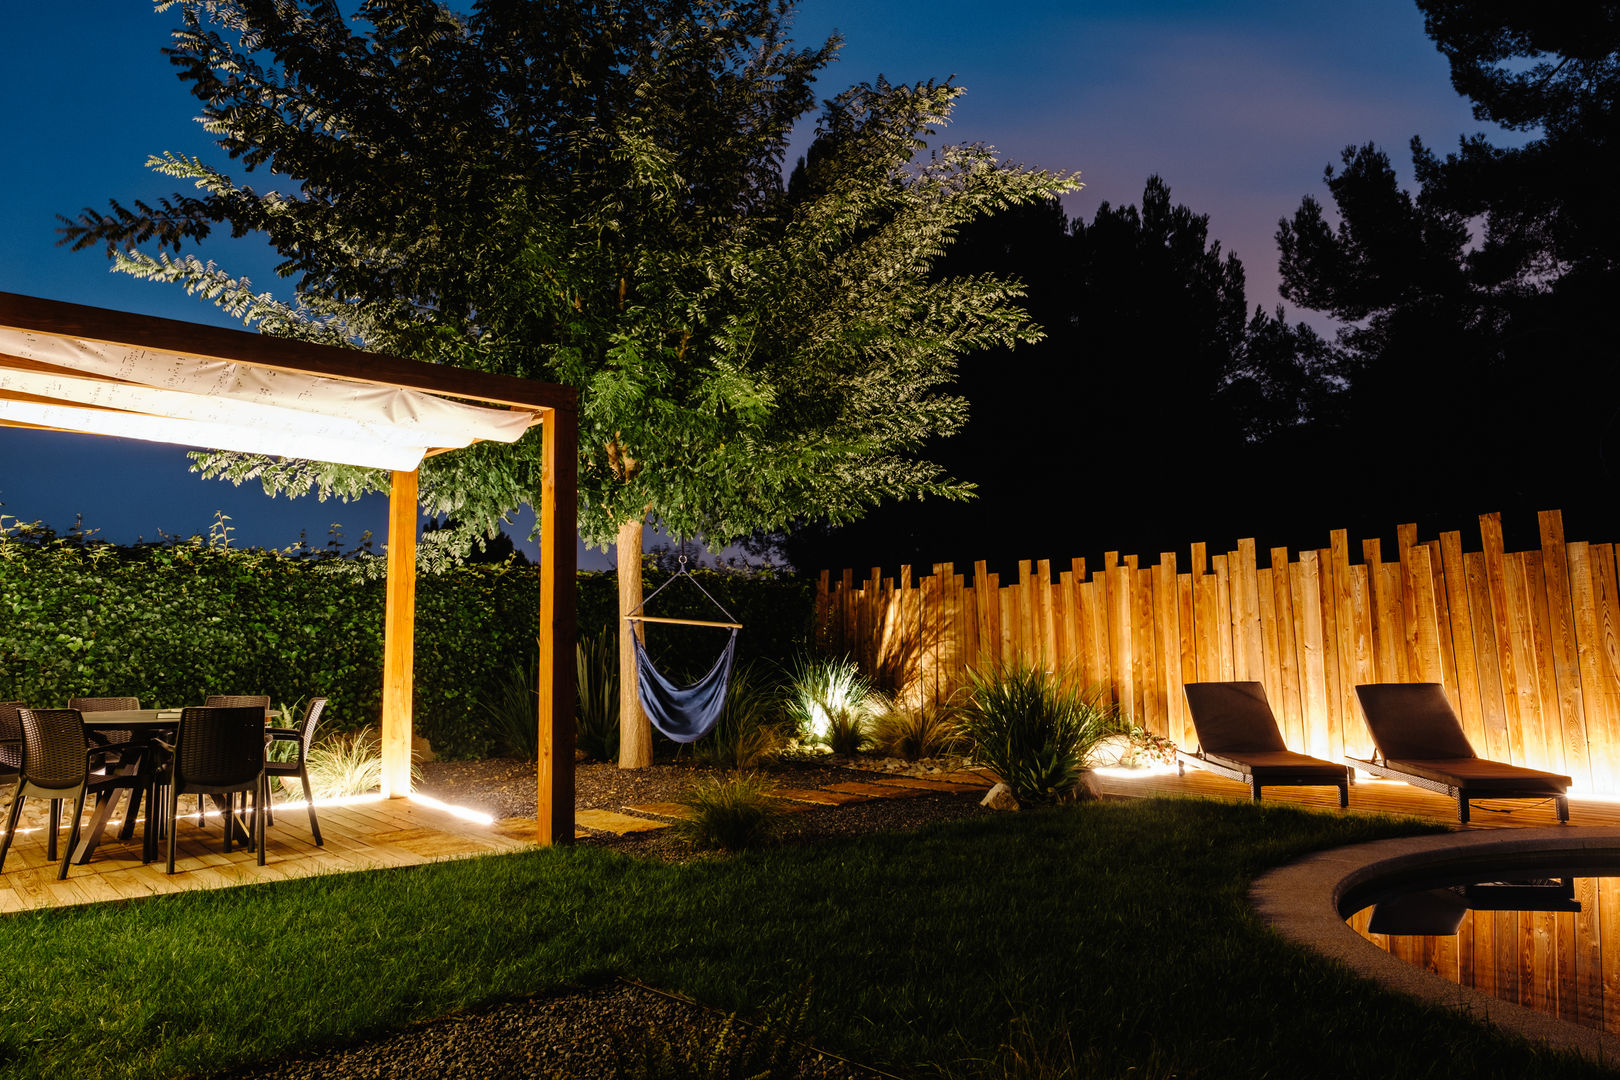 Las ideas más prácticas y bonitas para iluminar tu terraza o jardín